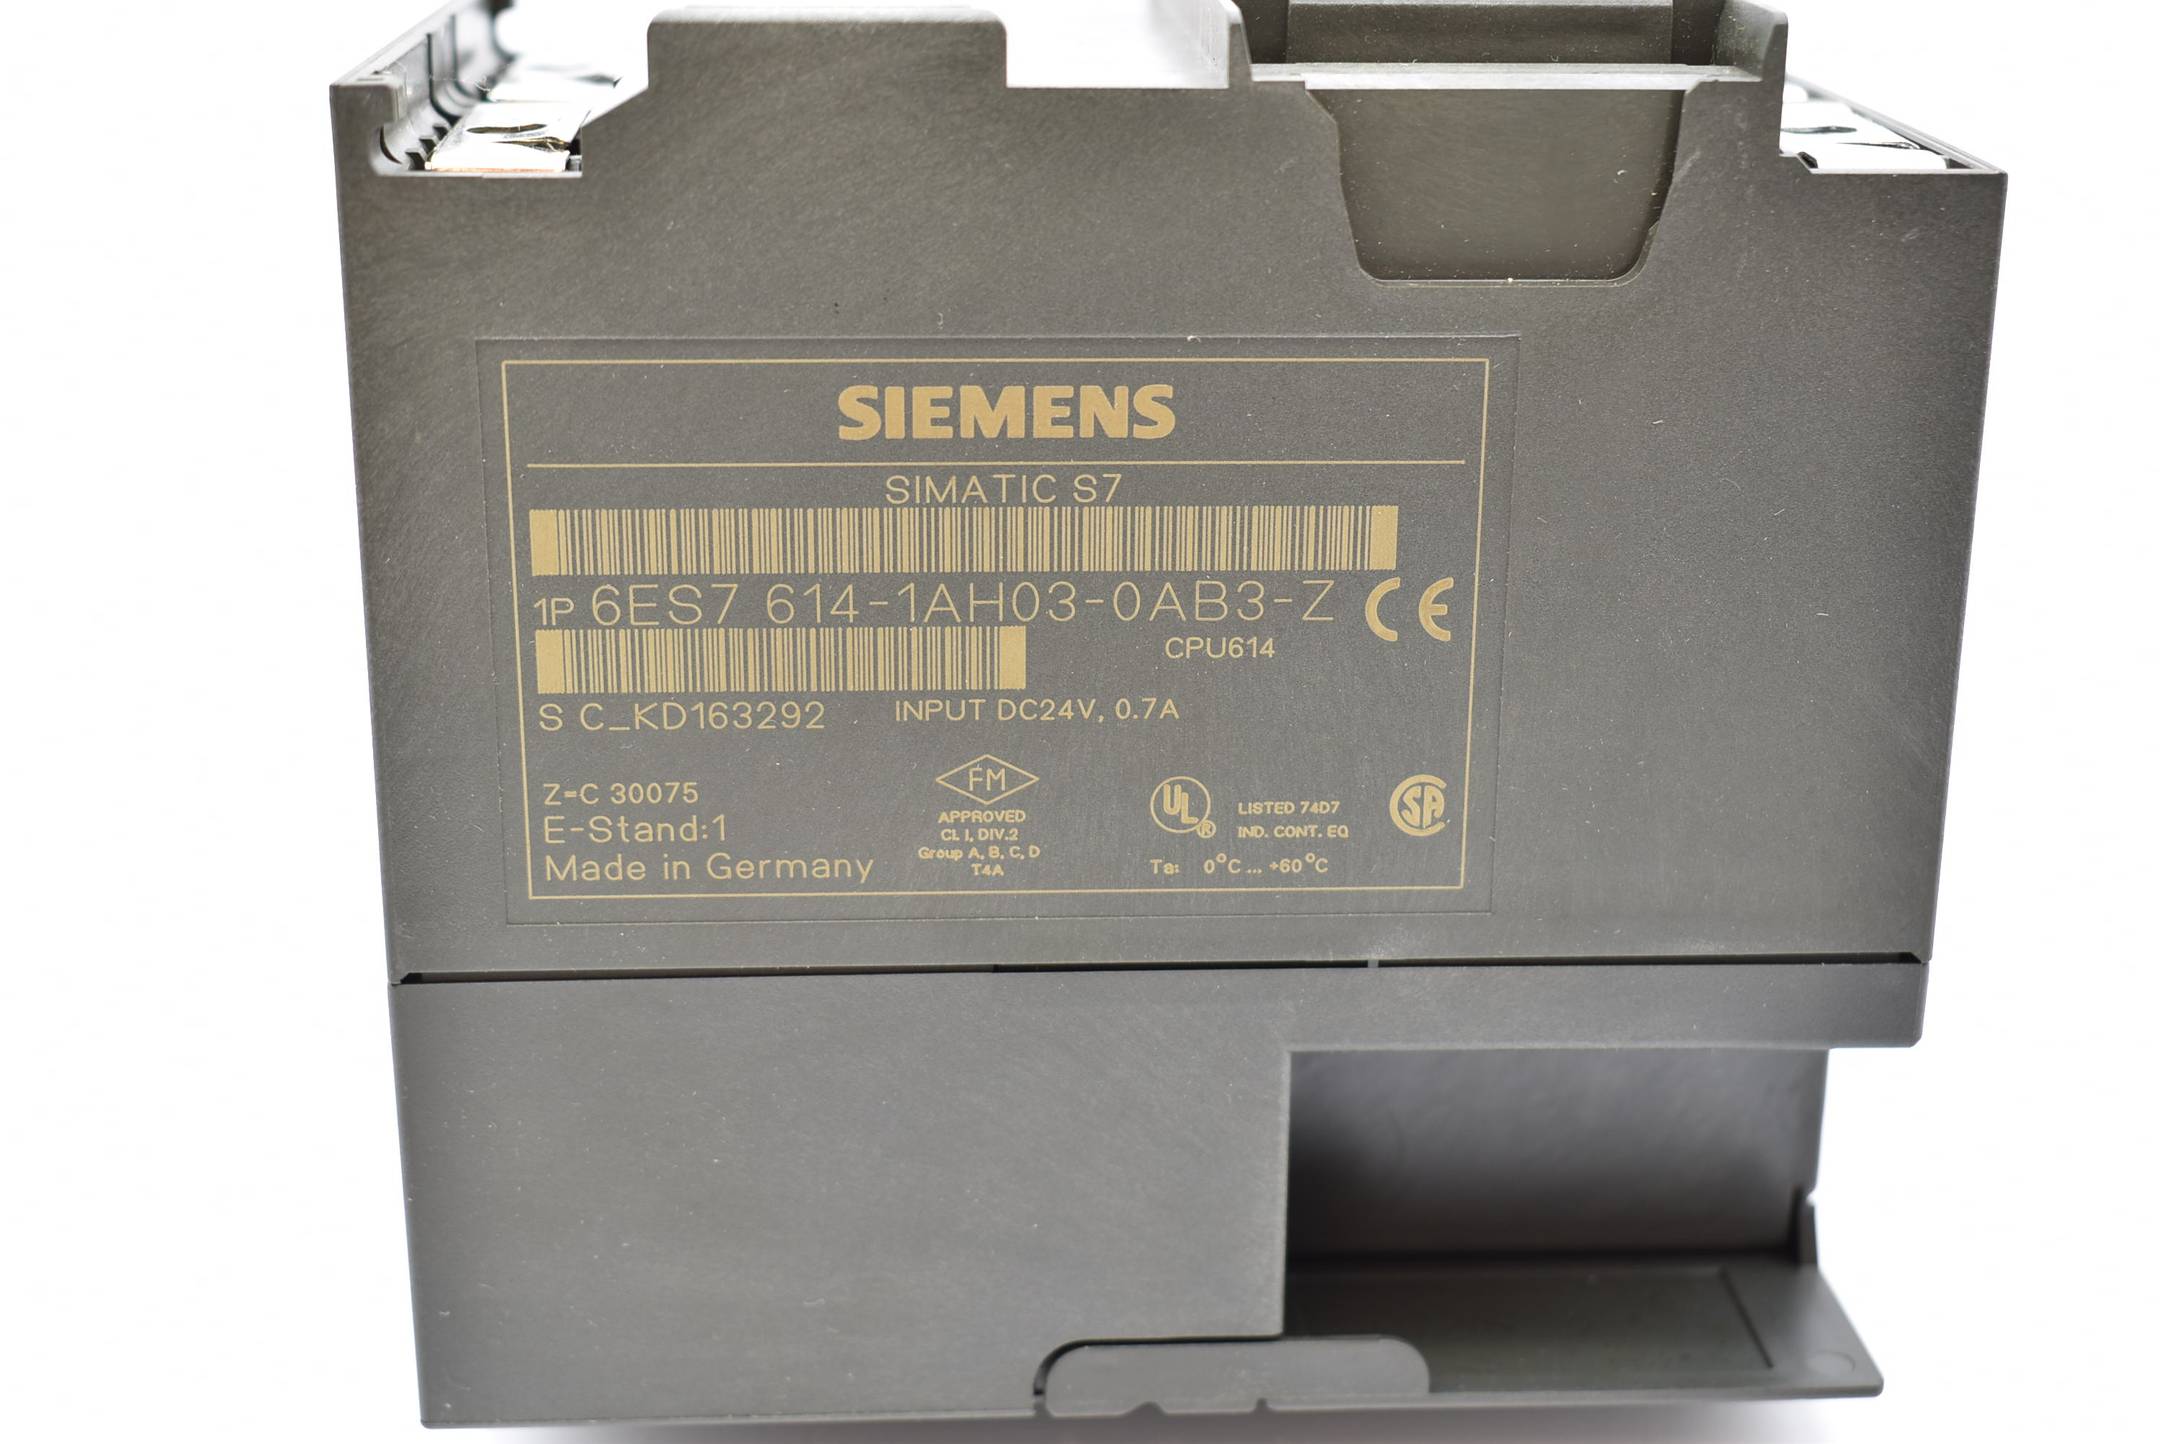 Siemens simatic S7-300 CPU614 6ES7614-1AH03-0AB3-Z ( 6ES7 614-1AH03-0AB3-Z ) E.1